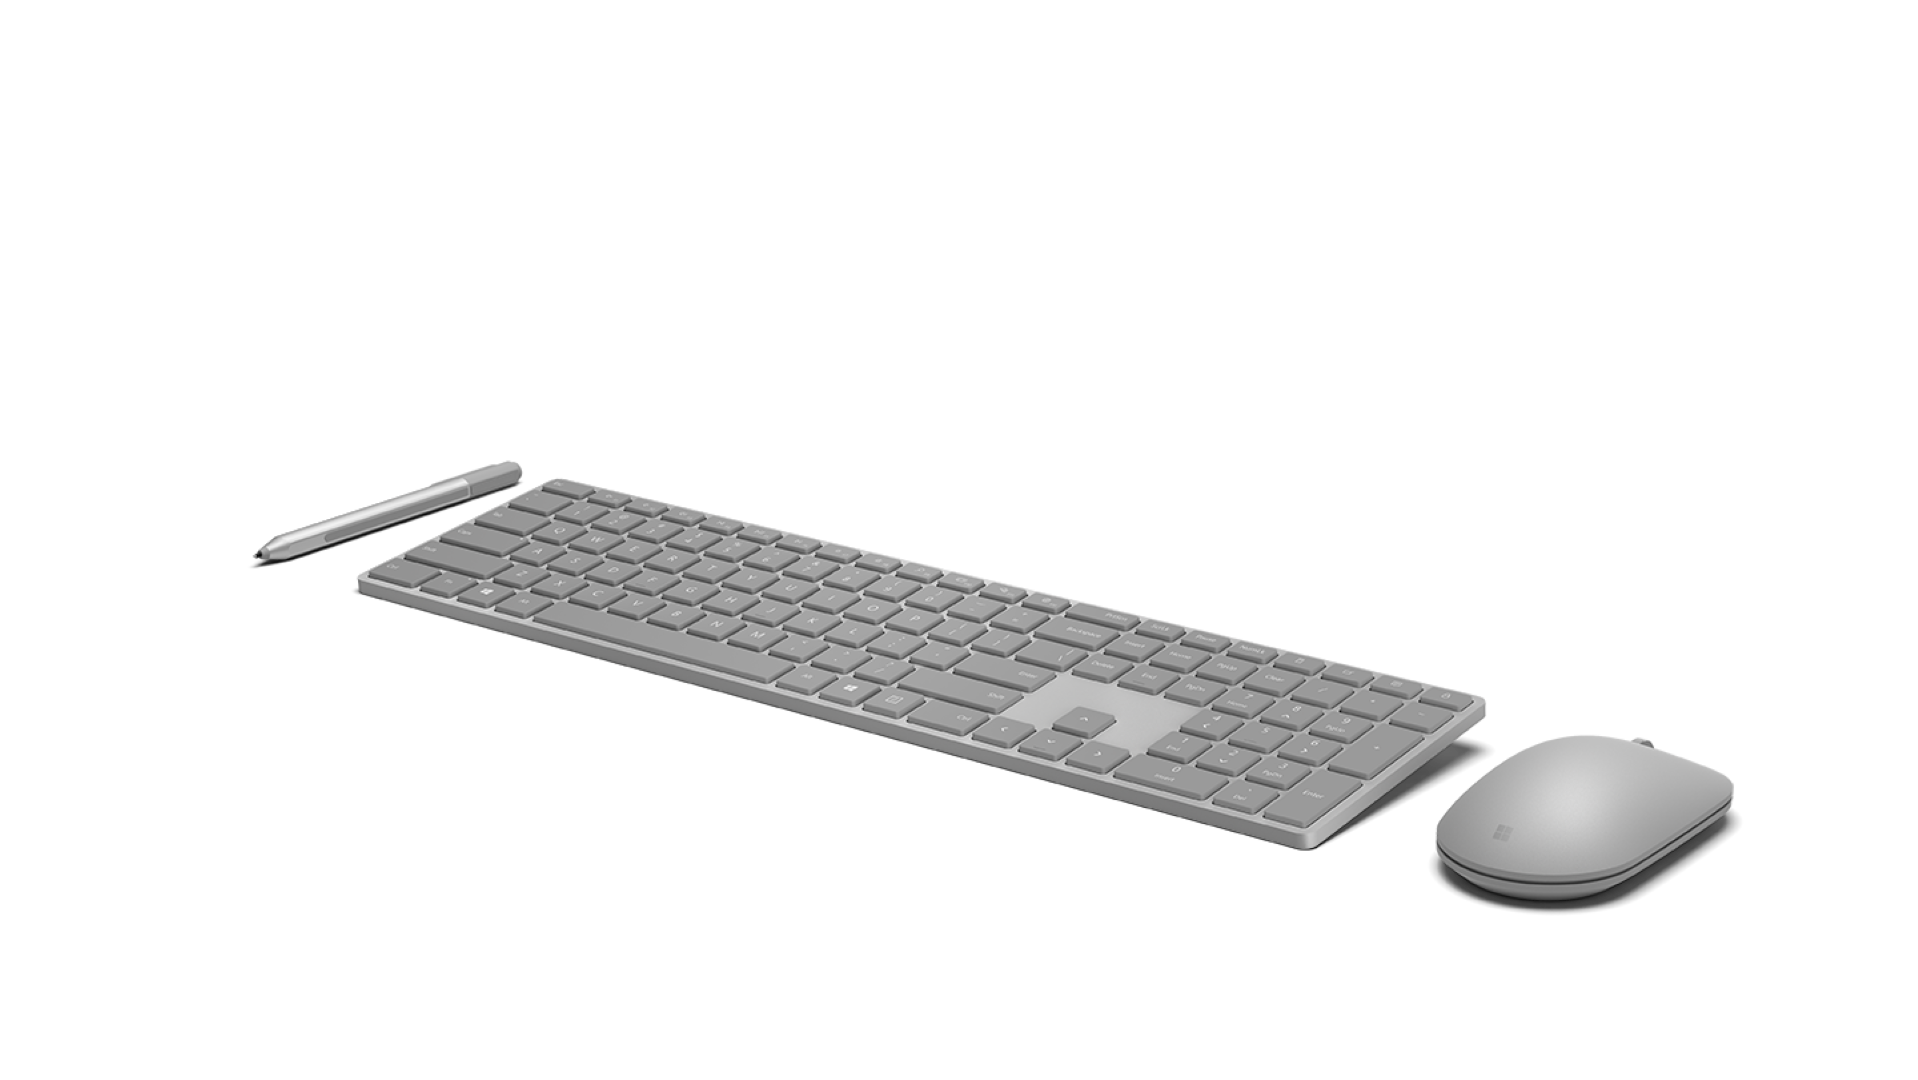 Nuova tastiera e mouse Surface disponibili all'acquisto in Italia